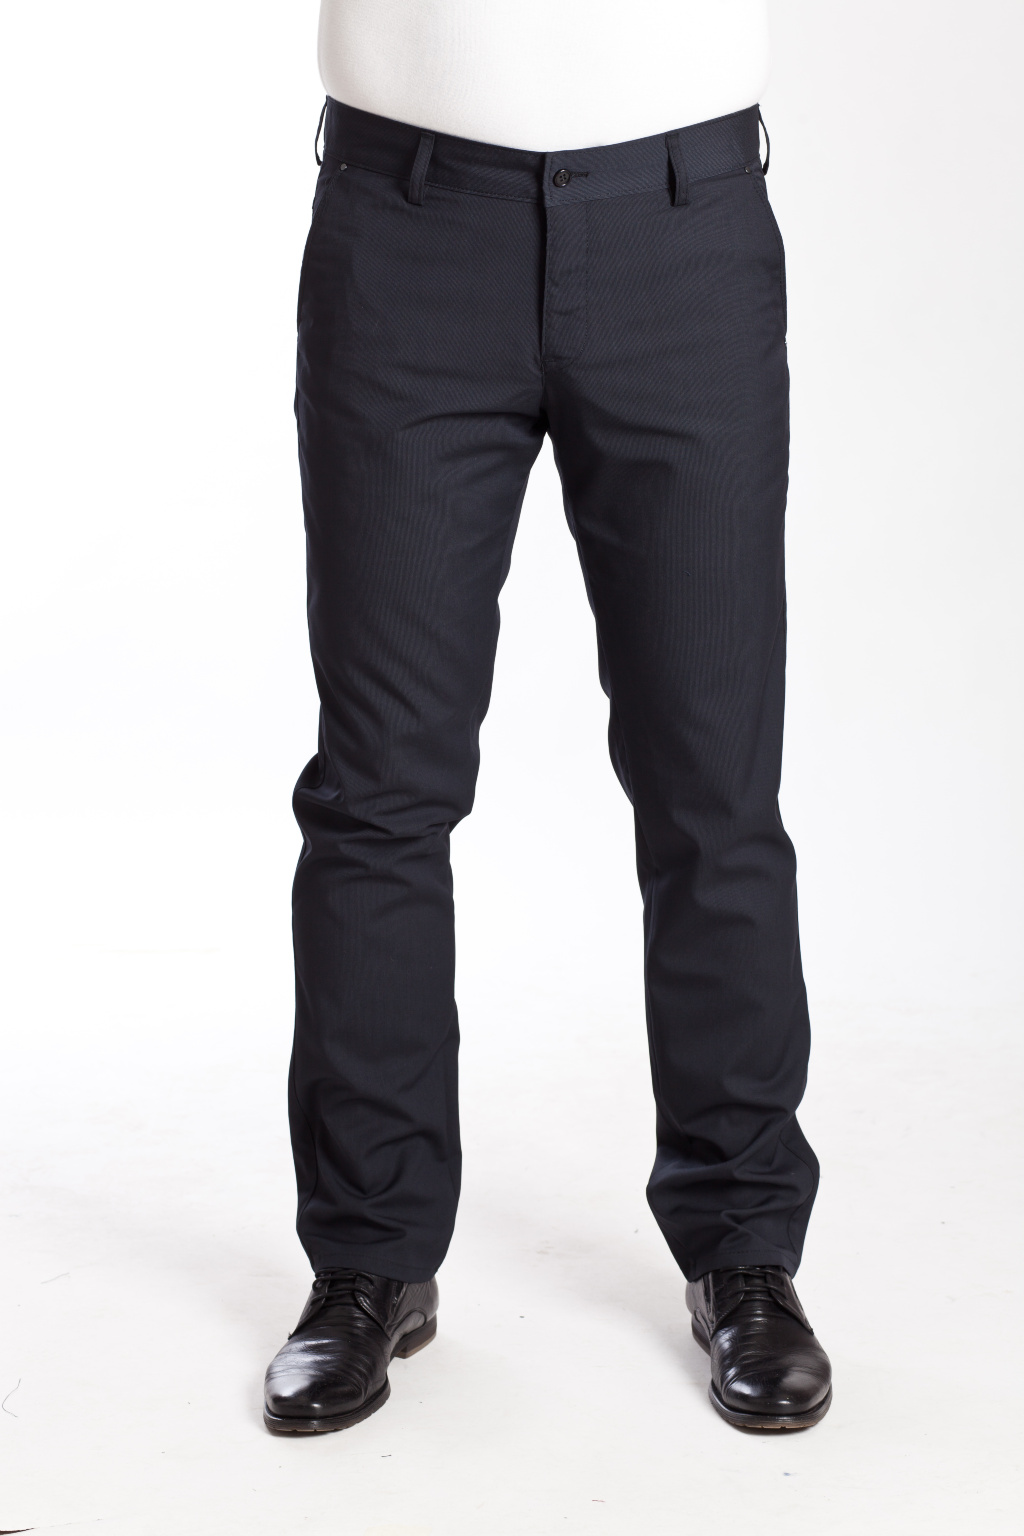 Мужские брюки в стиле Casual в интернет-магазине «Мир брюк»